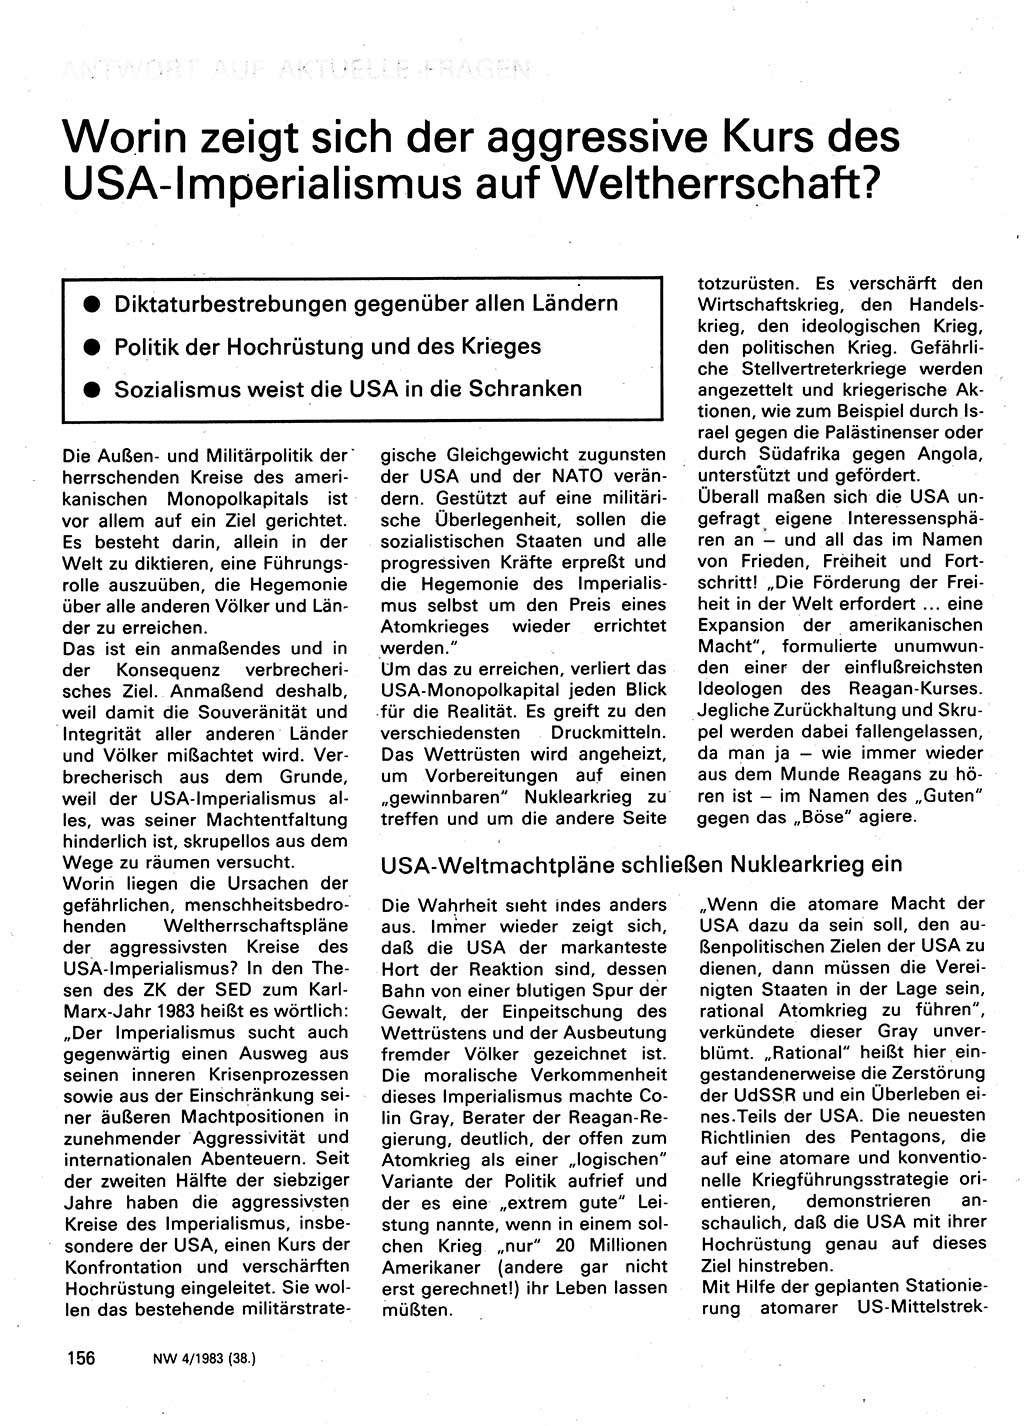 Neuer Weg (NW), Organ des Zentralkomitees (ZK) der SED (Sozialistische Einheitspartei Deutschlands) für Fragen des Parteilebens, 38. Jahrgang [Deutsche Demokratische Republik (DDR)] 1983, Seite 156 (NW ZK SED DDR 1983, S. 156)